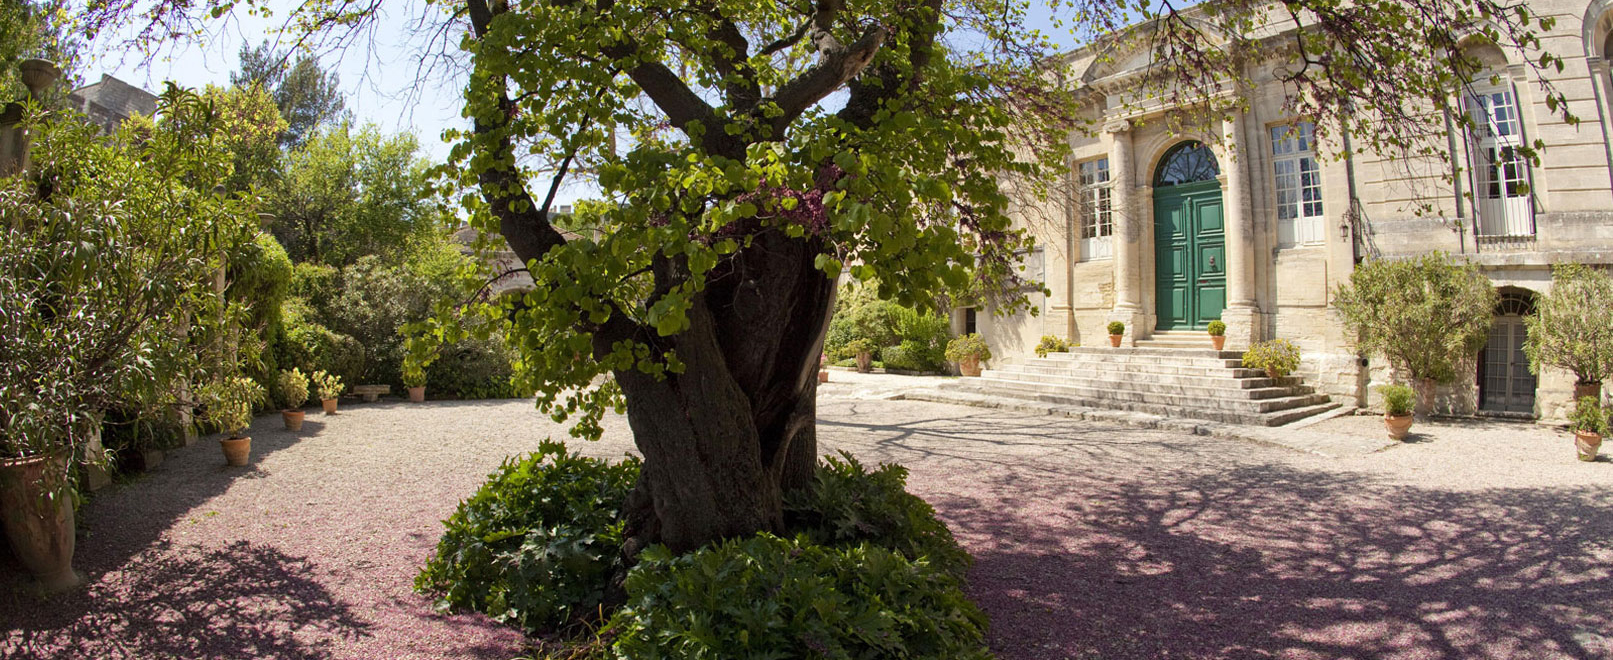 Zen en beschouwing in de tuinen van de abdij